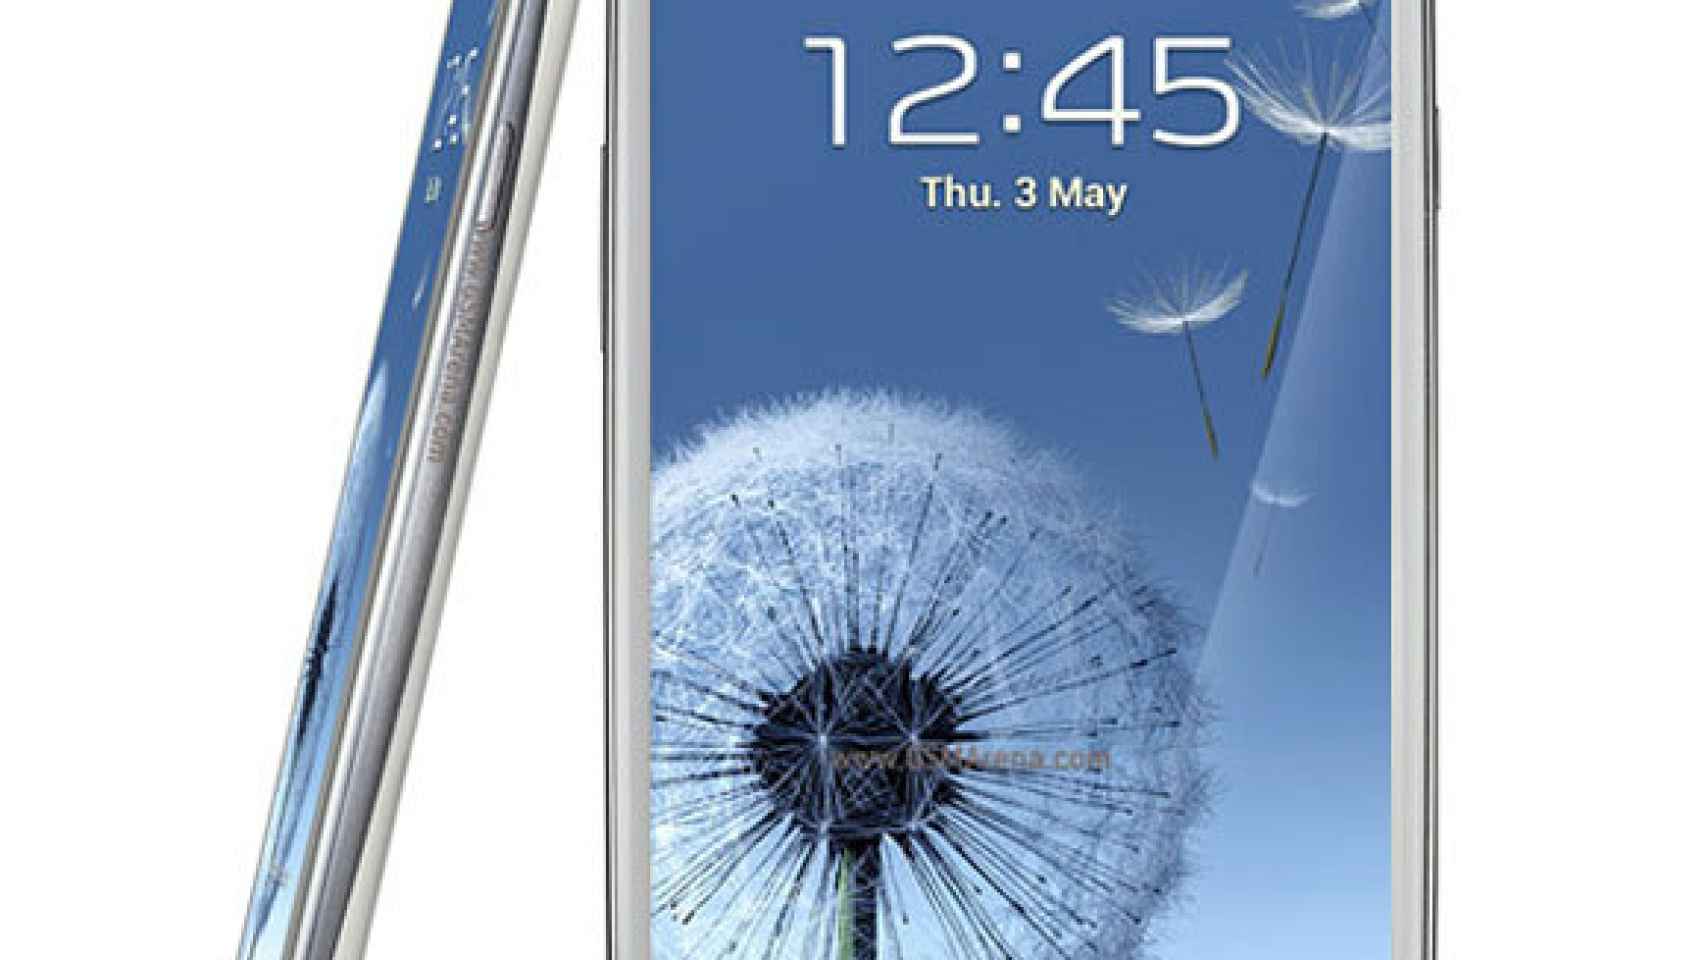 Samsung Galaxy Note 2 filtrado: Pantalla de 5,5 pulgadas y diseño inspirado en el Galaxy S3